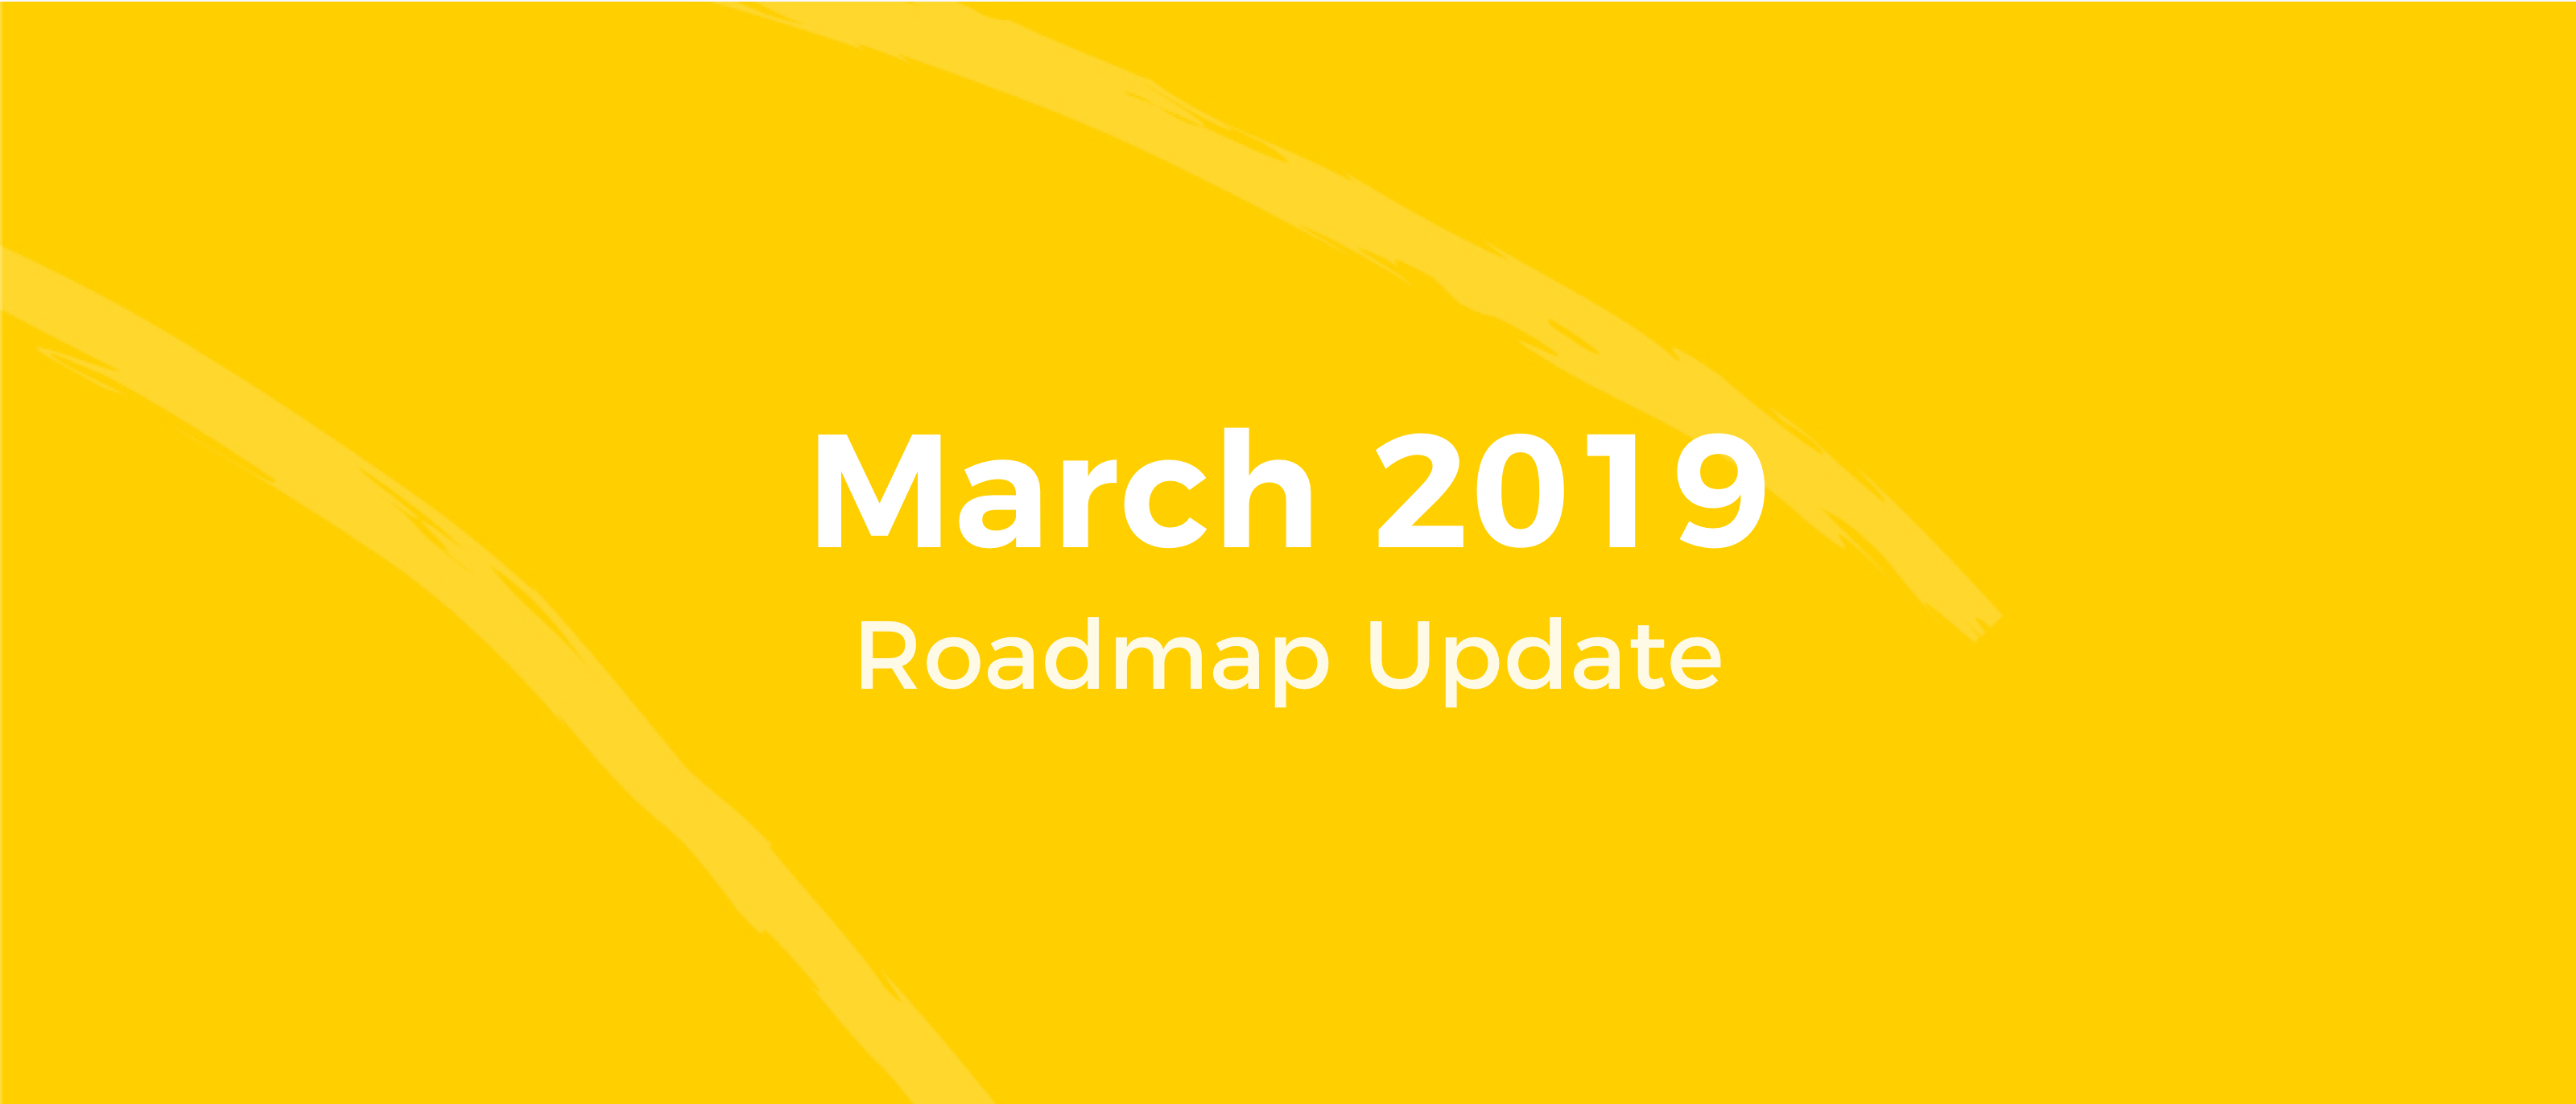 Roadmap Update March 2019